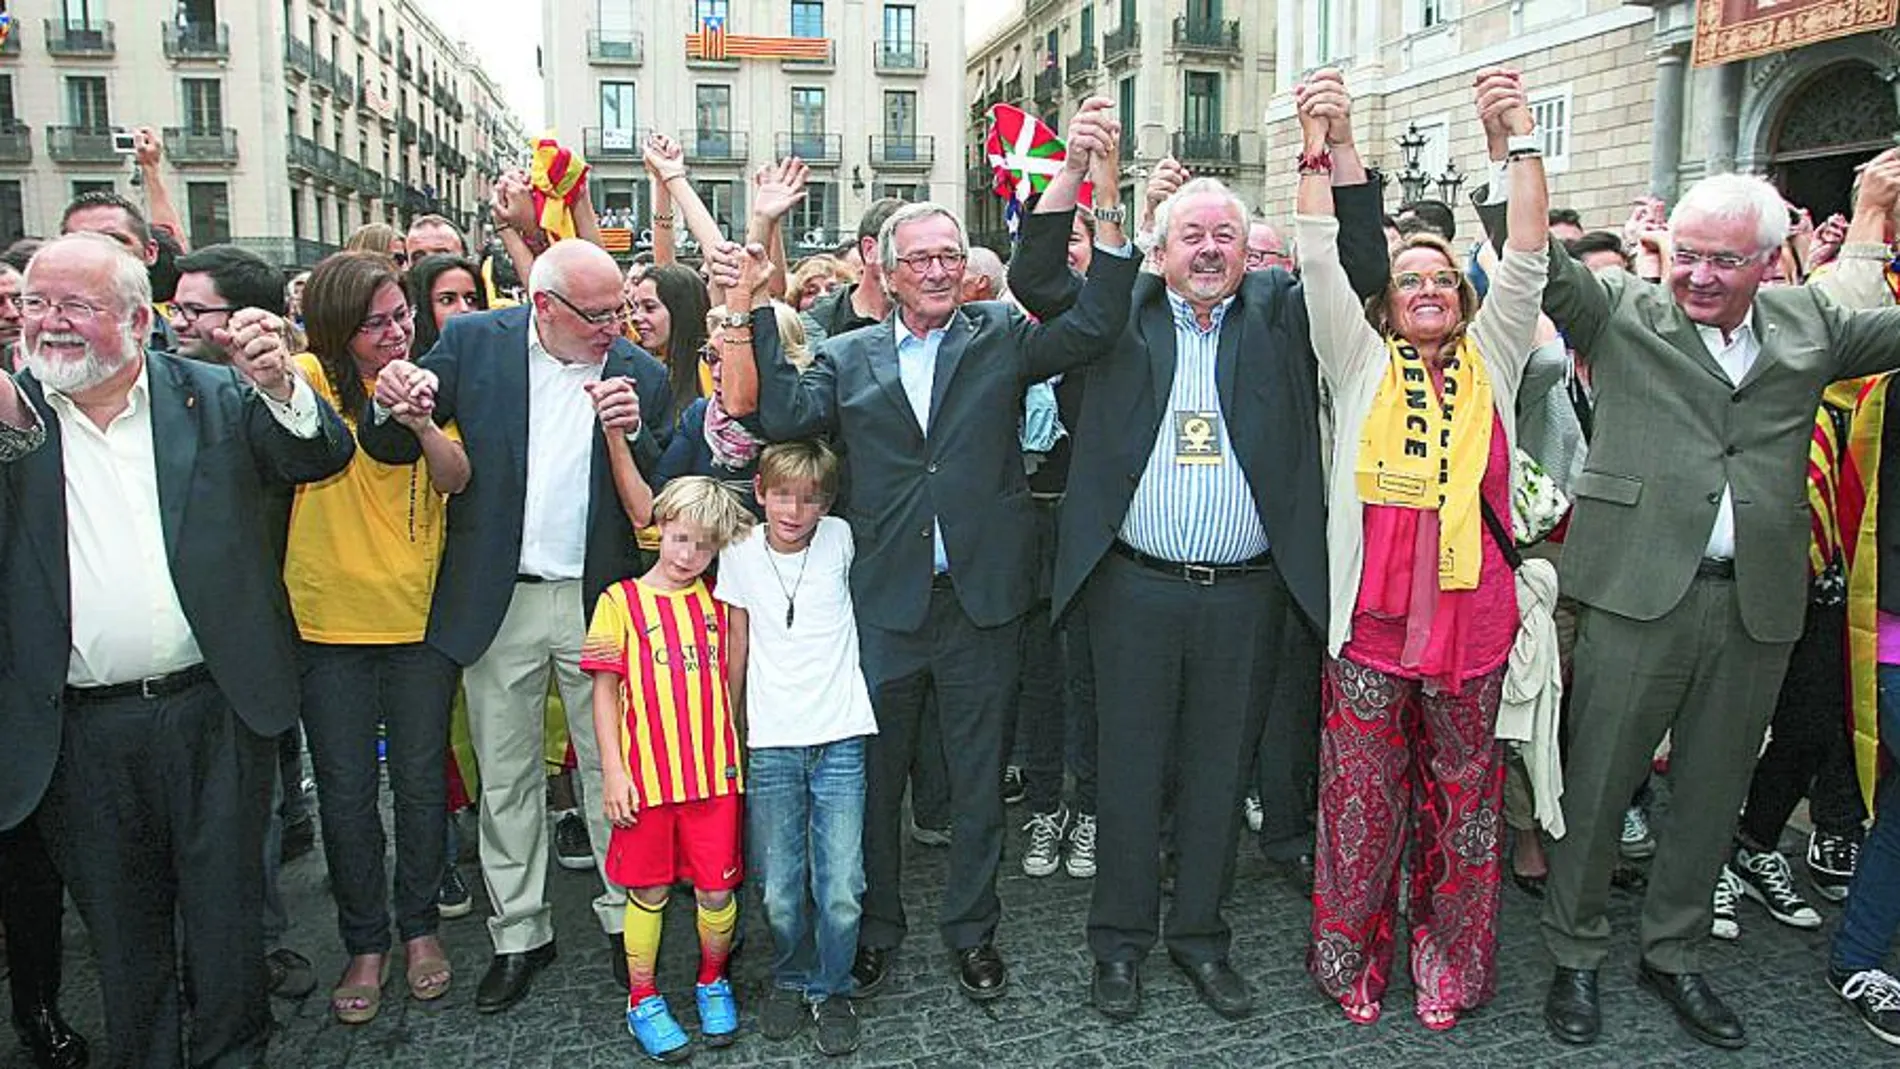 El alcalde de Barcelona, Xavier Trias, participó en la Vía Catalana el pasado 11 de septiembre para exigir la independencia